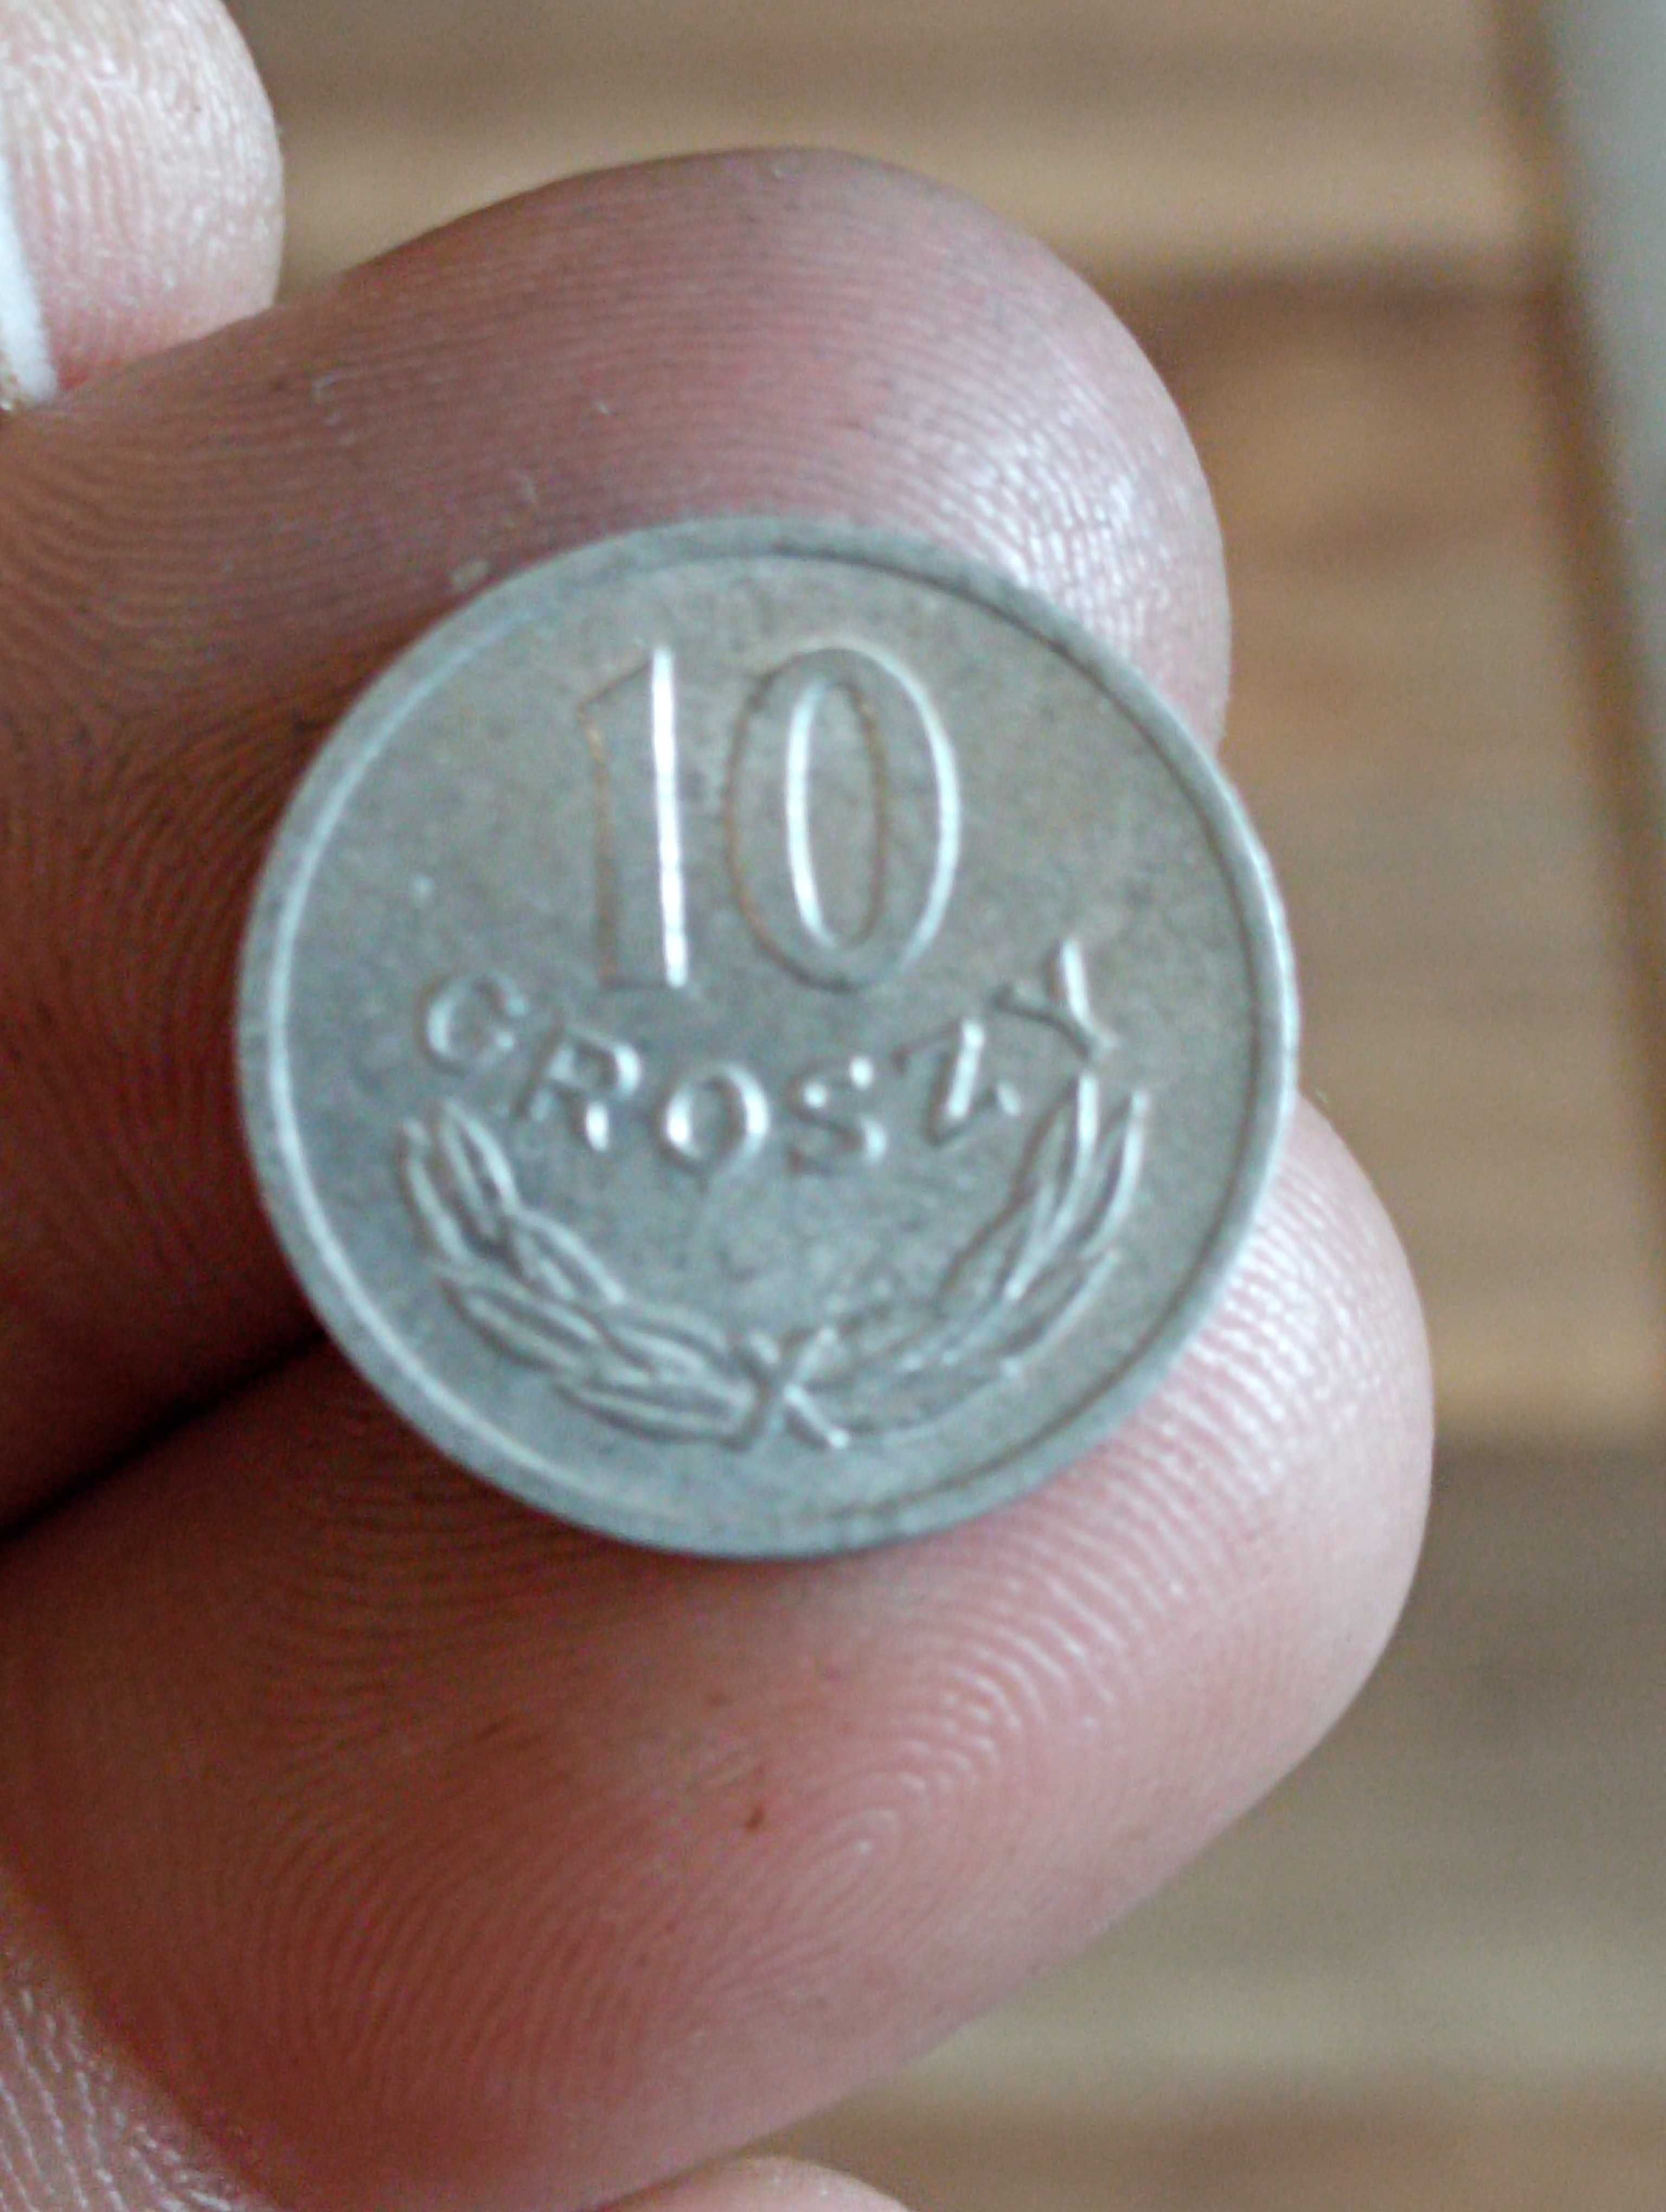 Sprzedam bn monetę 10 groszy 1973 r